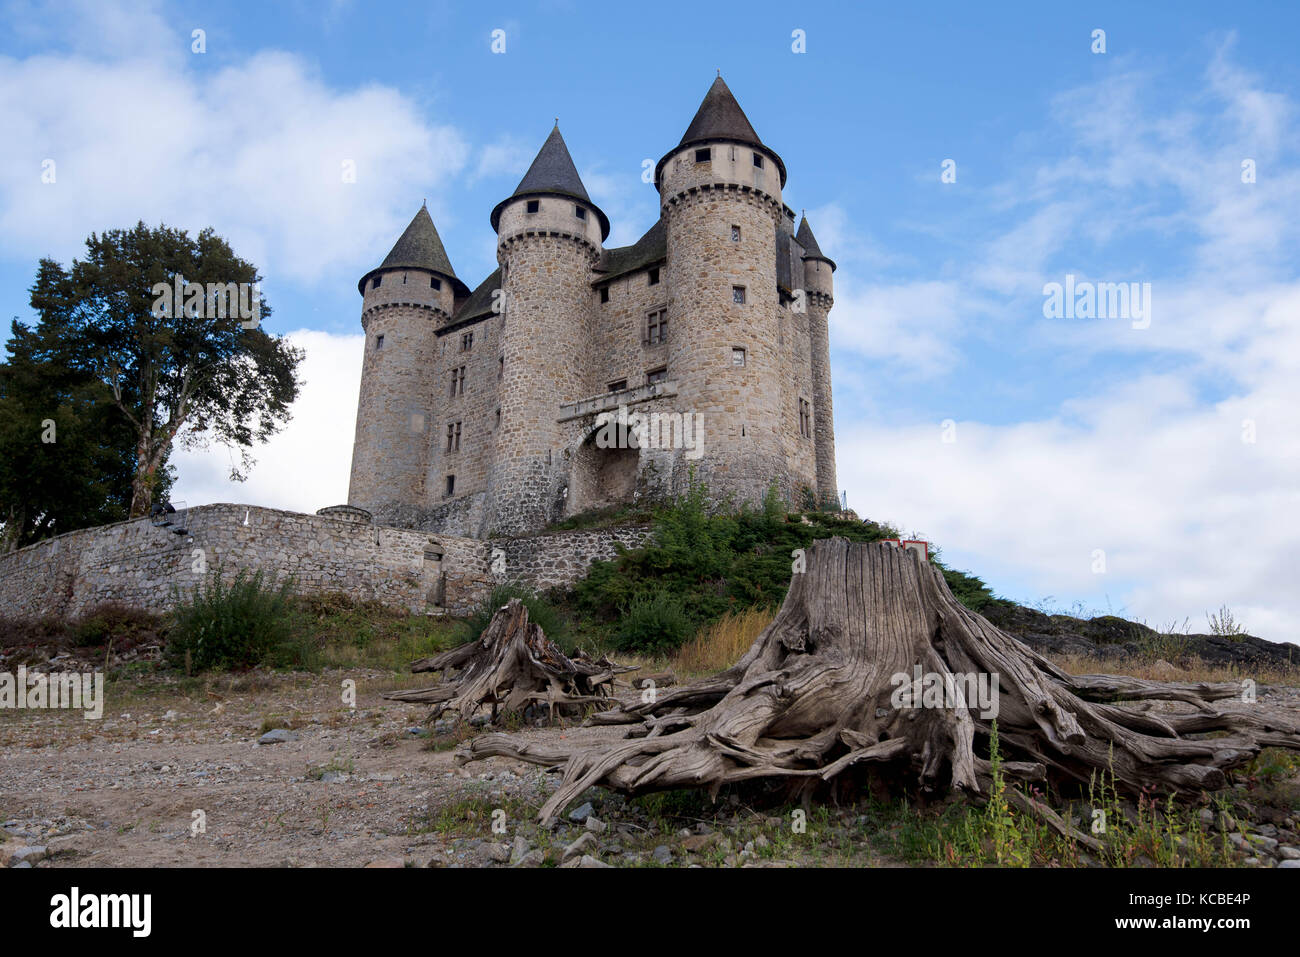 Le beau château ' chateau de val' en Auvergne en France Banque D'Images